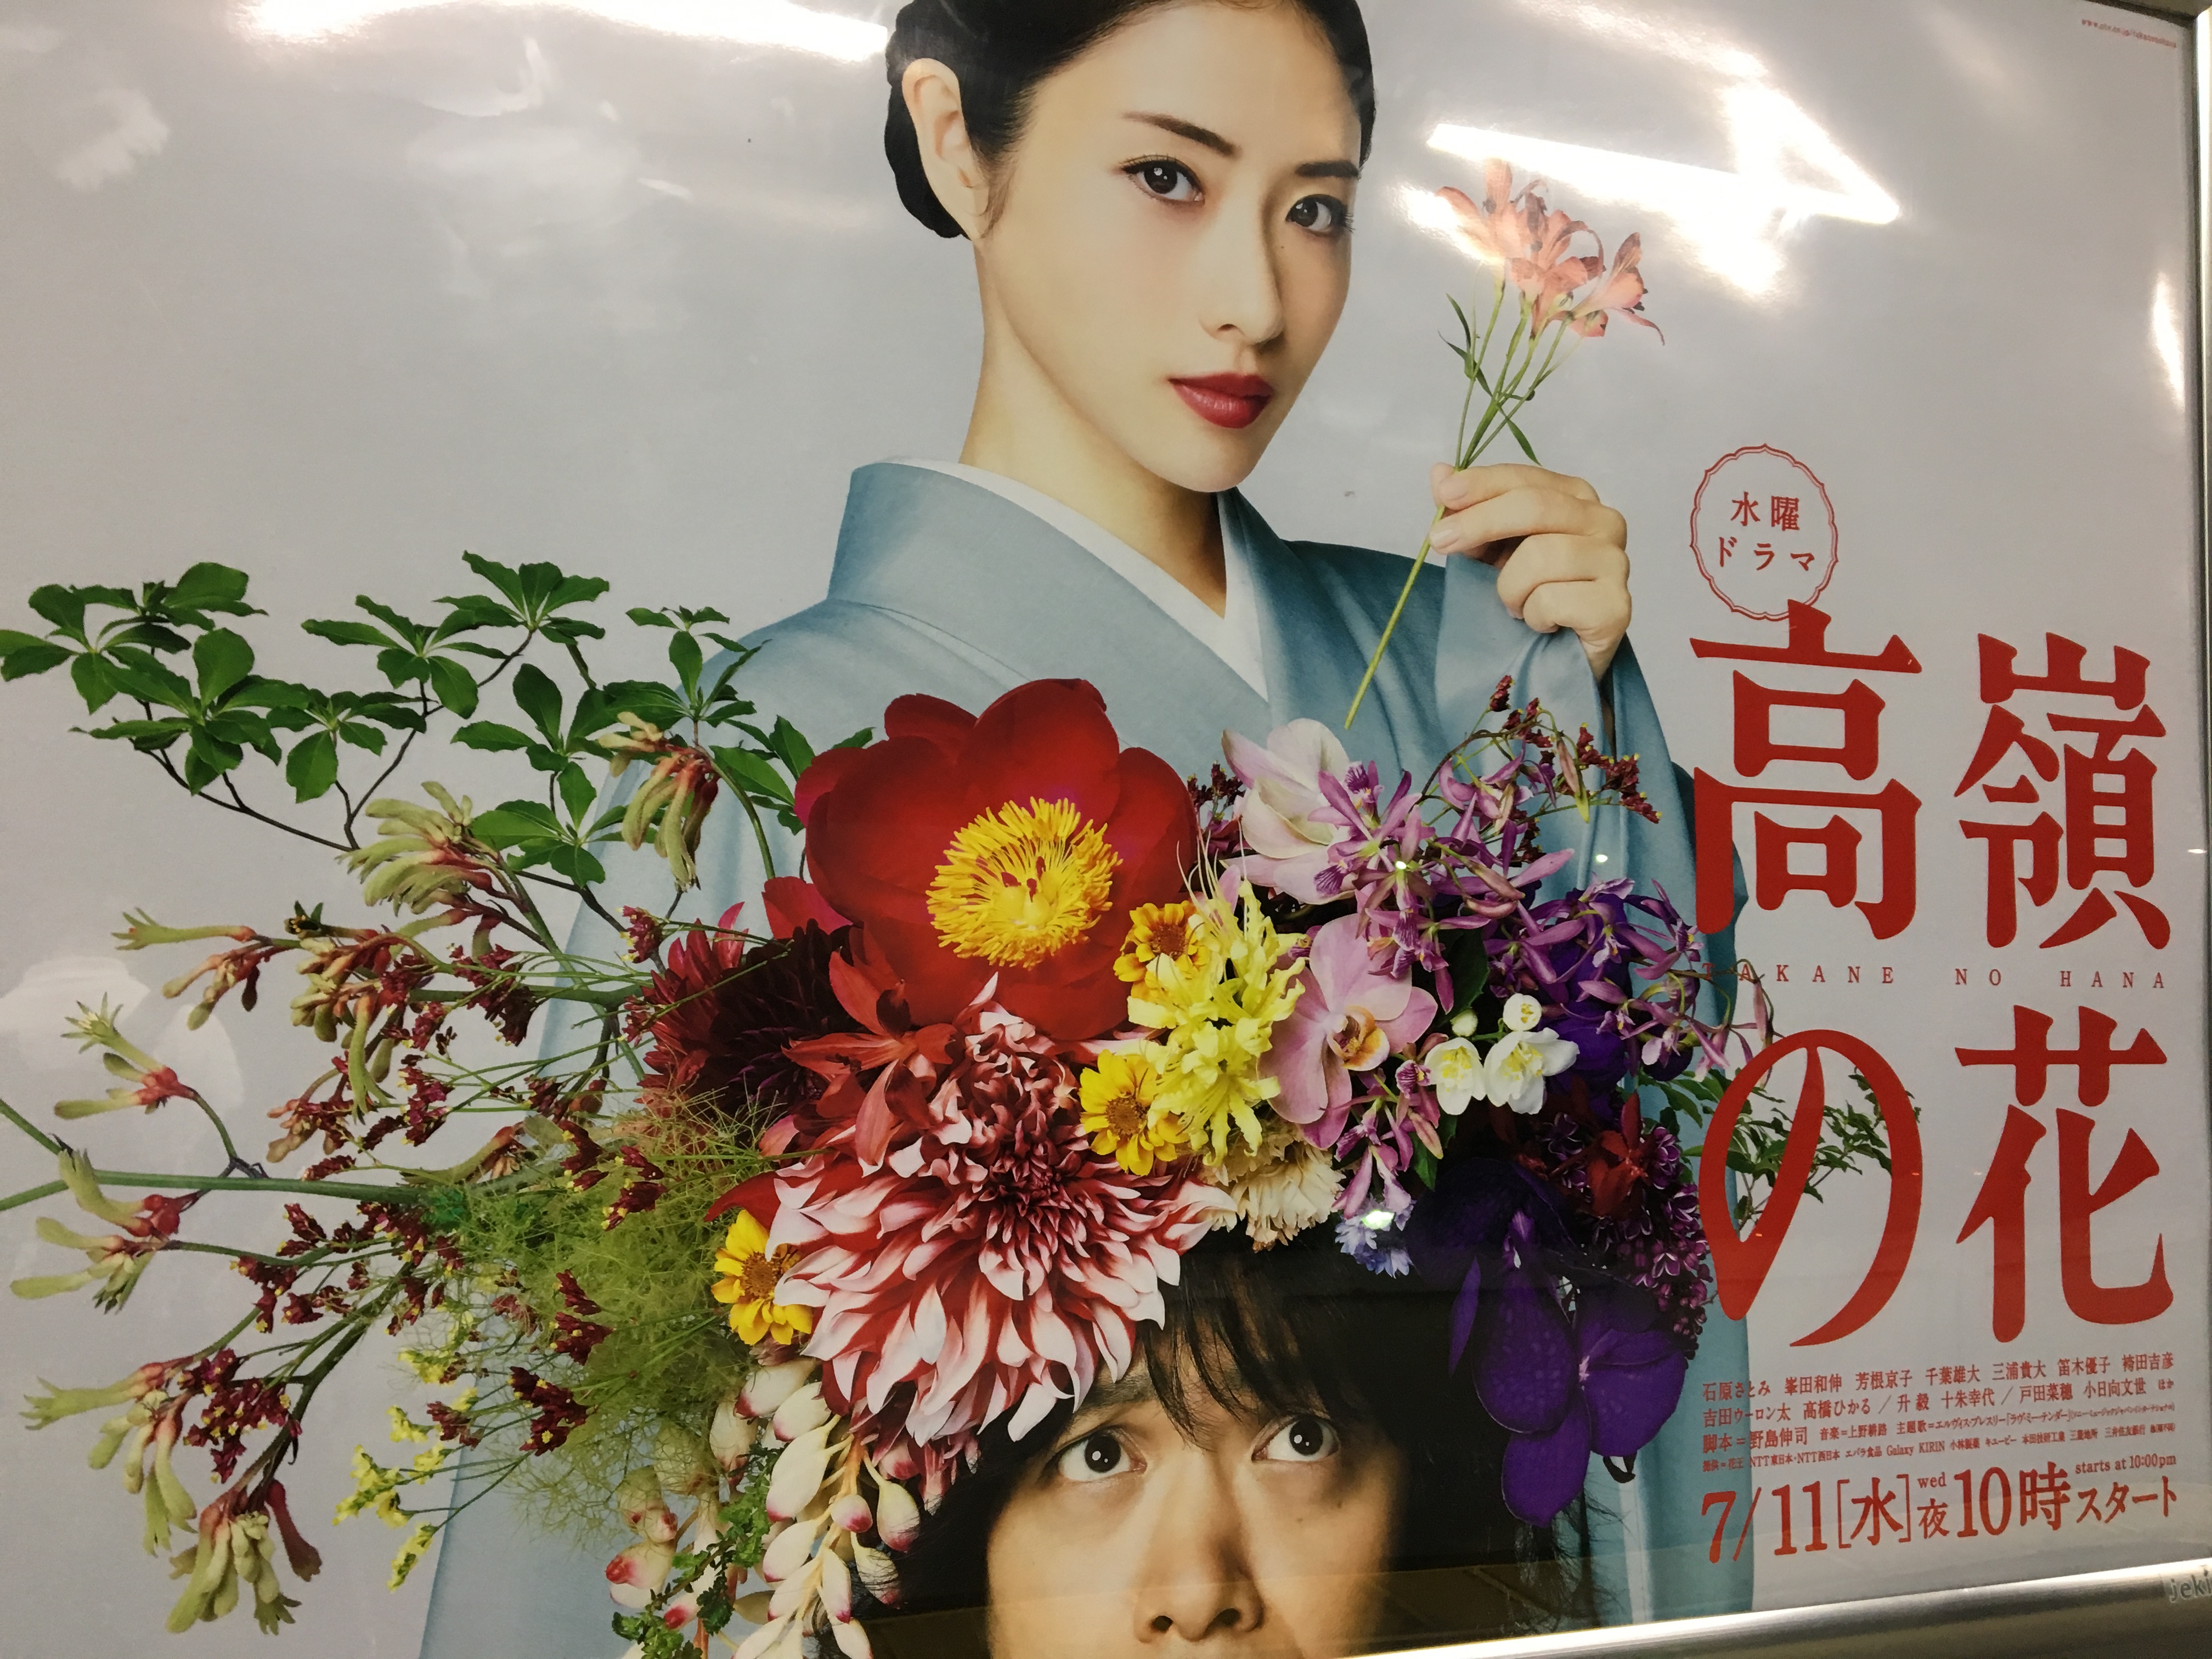 ドラマ 高嶺の花 から知る華道流派の違い 装花tokyo Karin Sugiyama